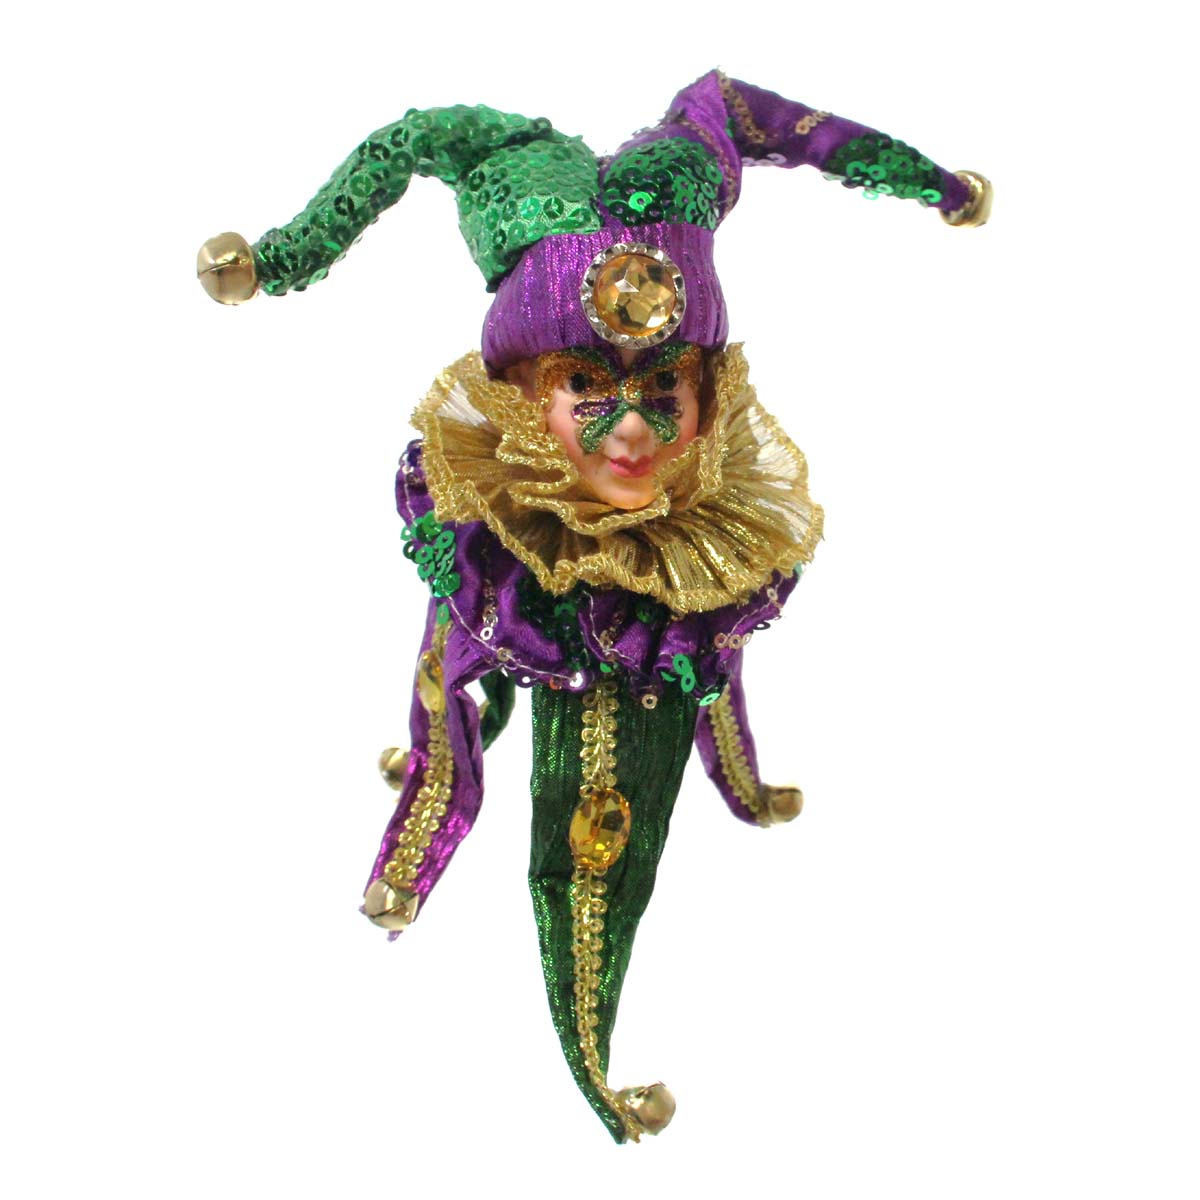 Ornaments – Mardi Gras & More